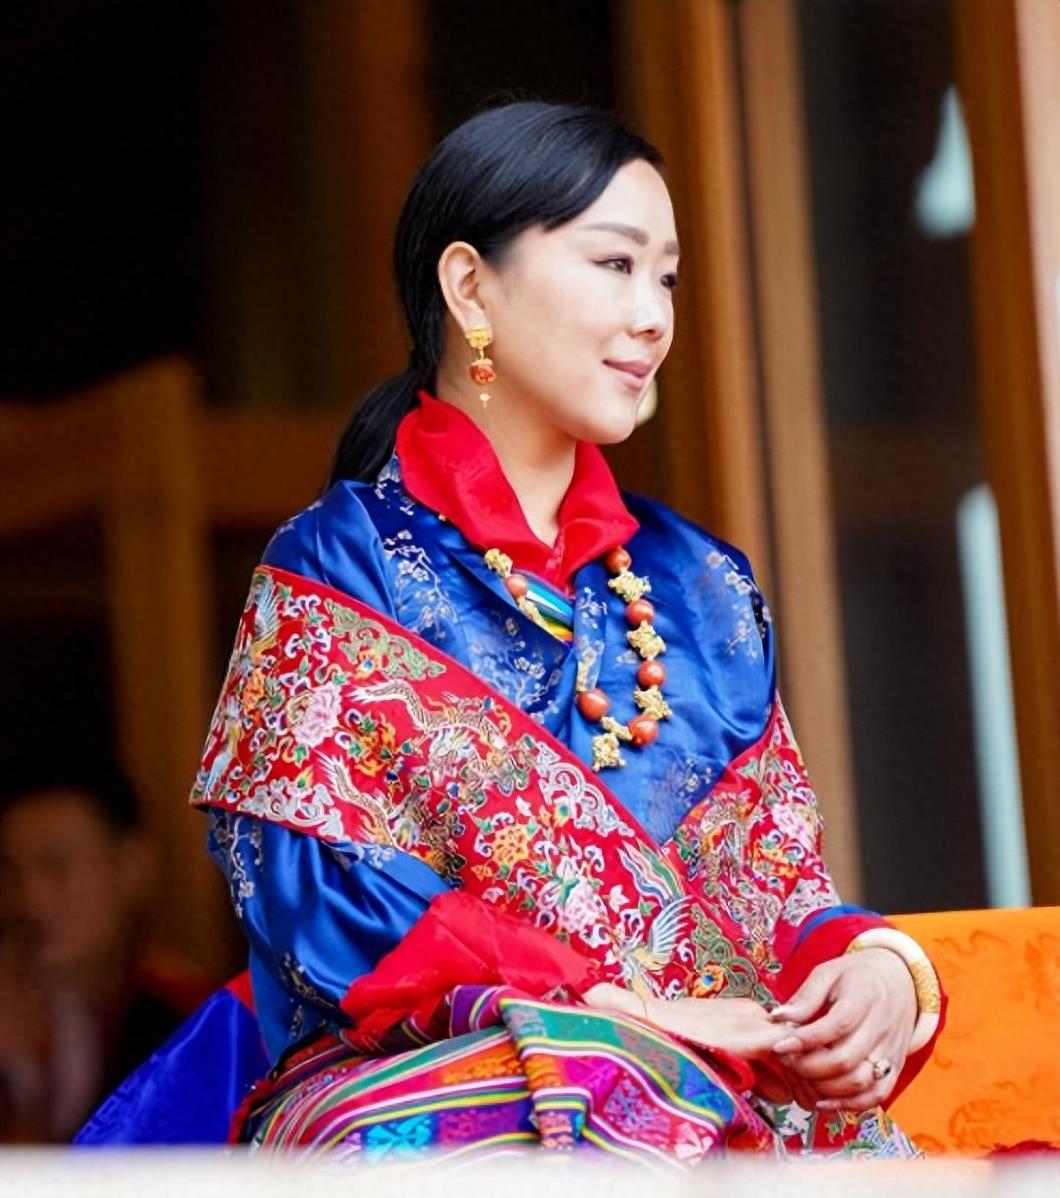 不丹王室成员集体亮相,唯独少了佩玛王后,连生3子照样没地位